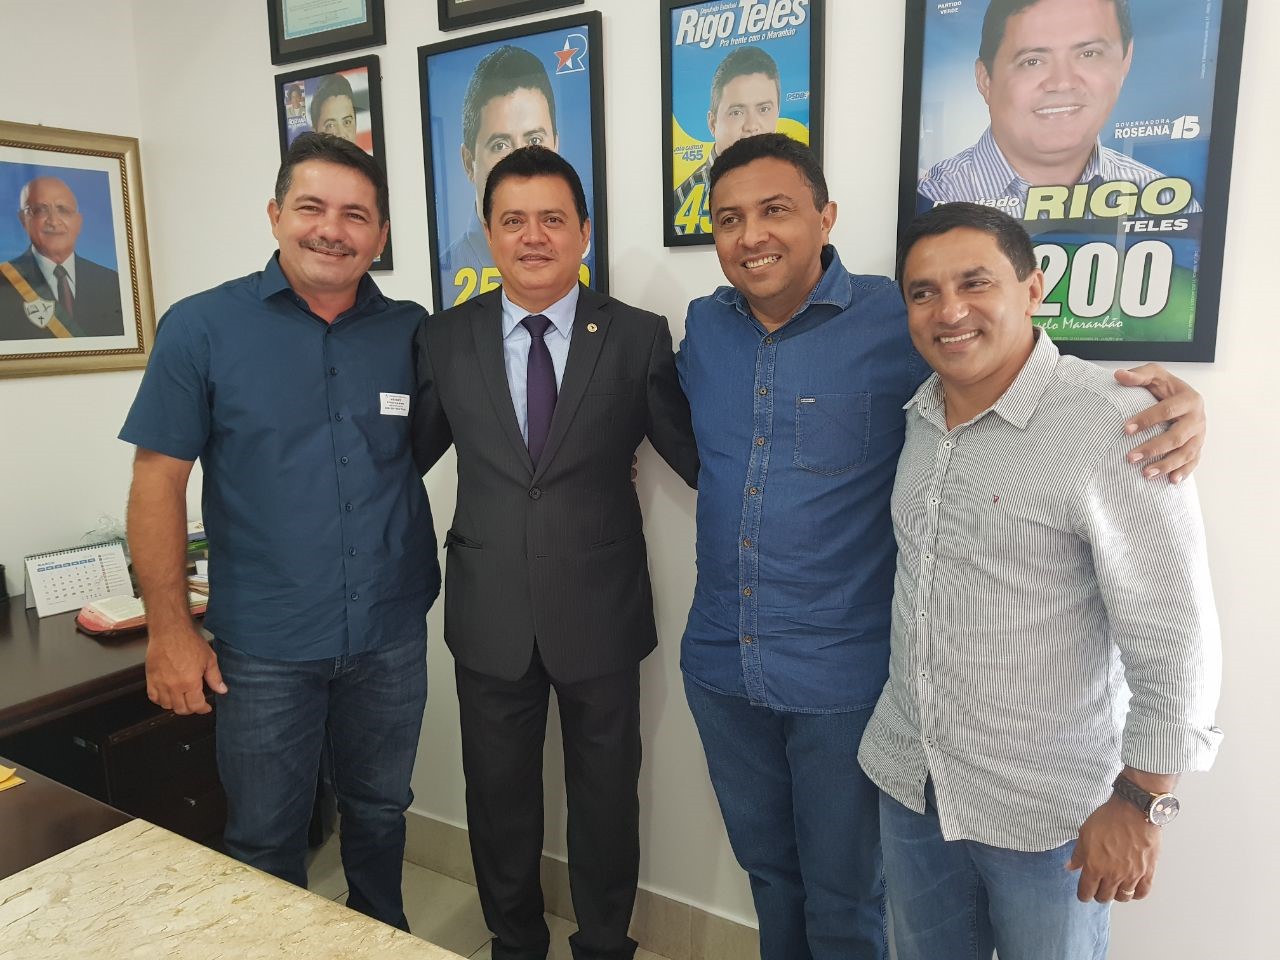 Rigo Teles recebe visita de prefeitos e promete continuar trabalhando pelo povo 